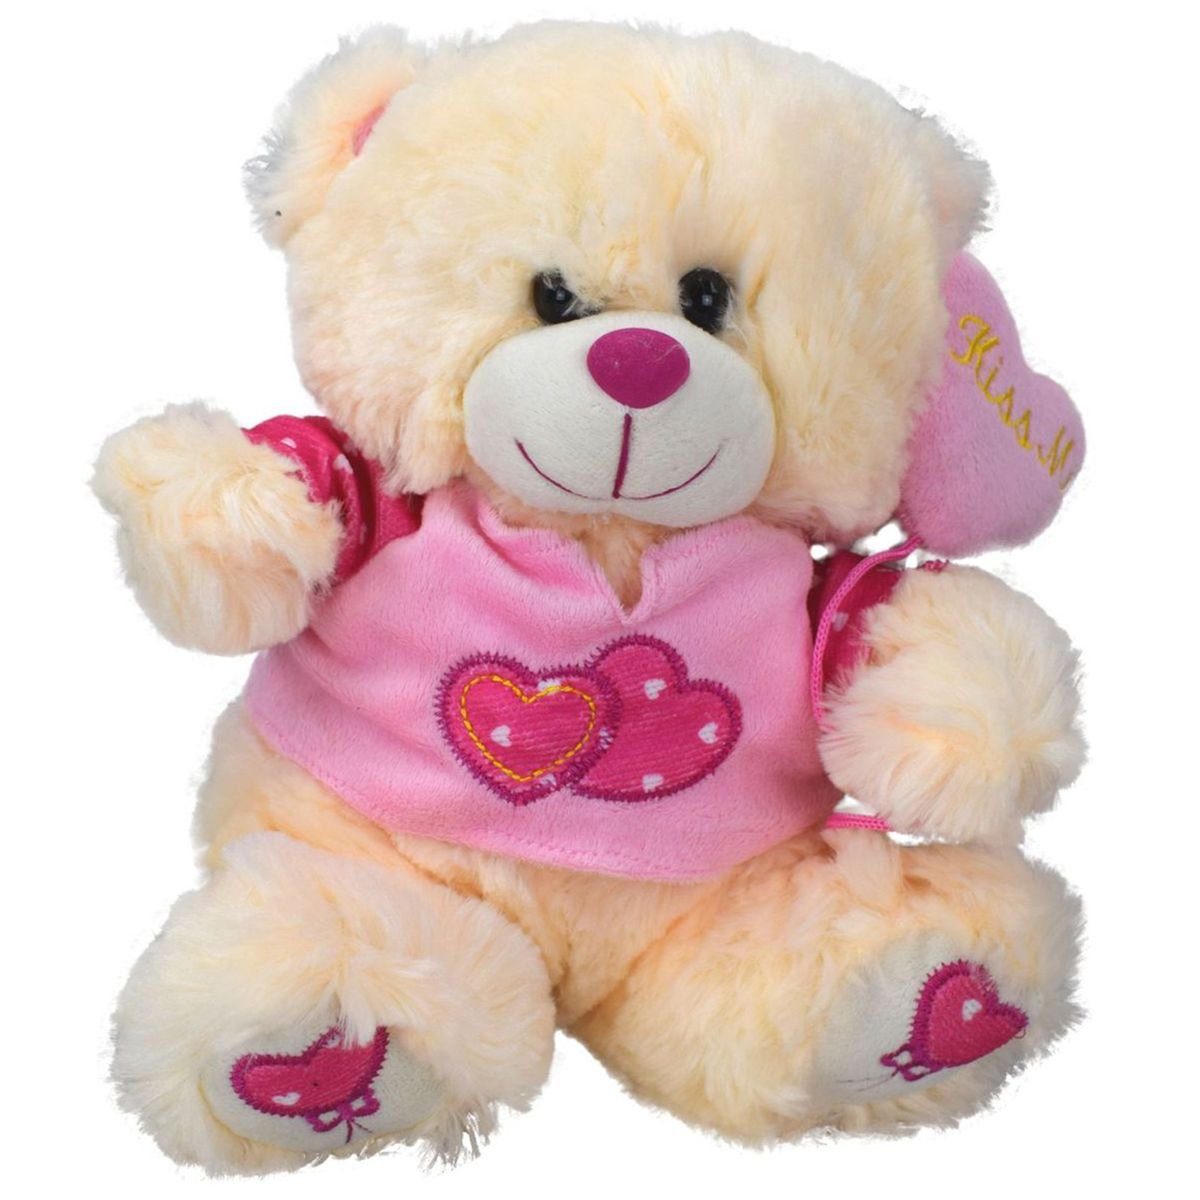 Marabellas Shop Kuscheltier Teddy mit Ballon und Herz in Pink Teddybär Plüschfigur ca. 26 cm, extra weiches Plüschmaterial